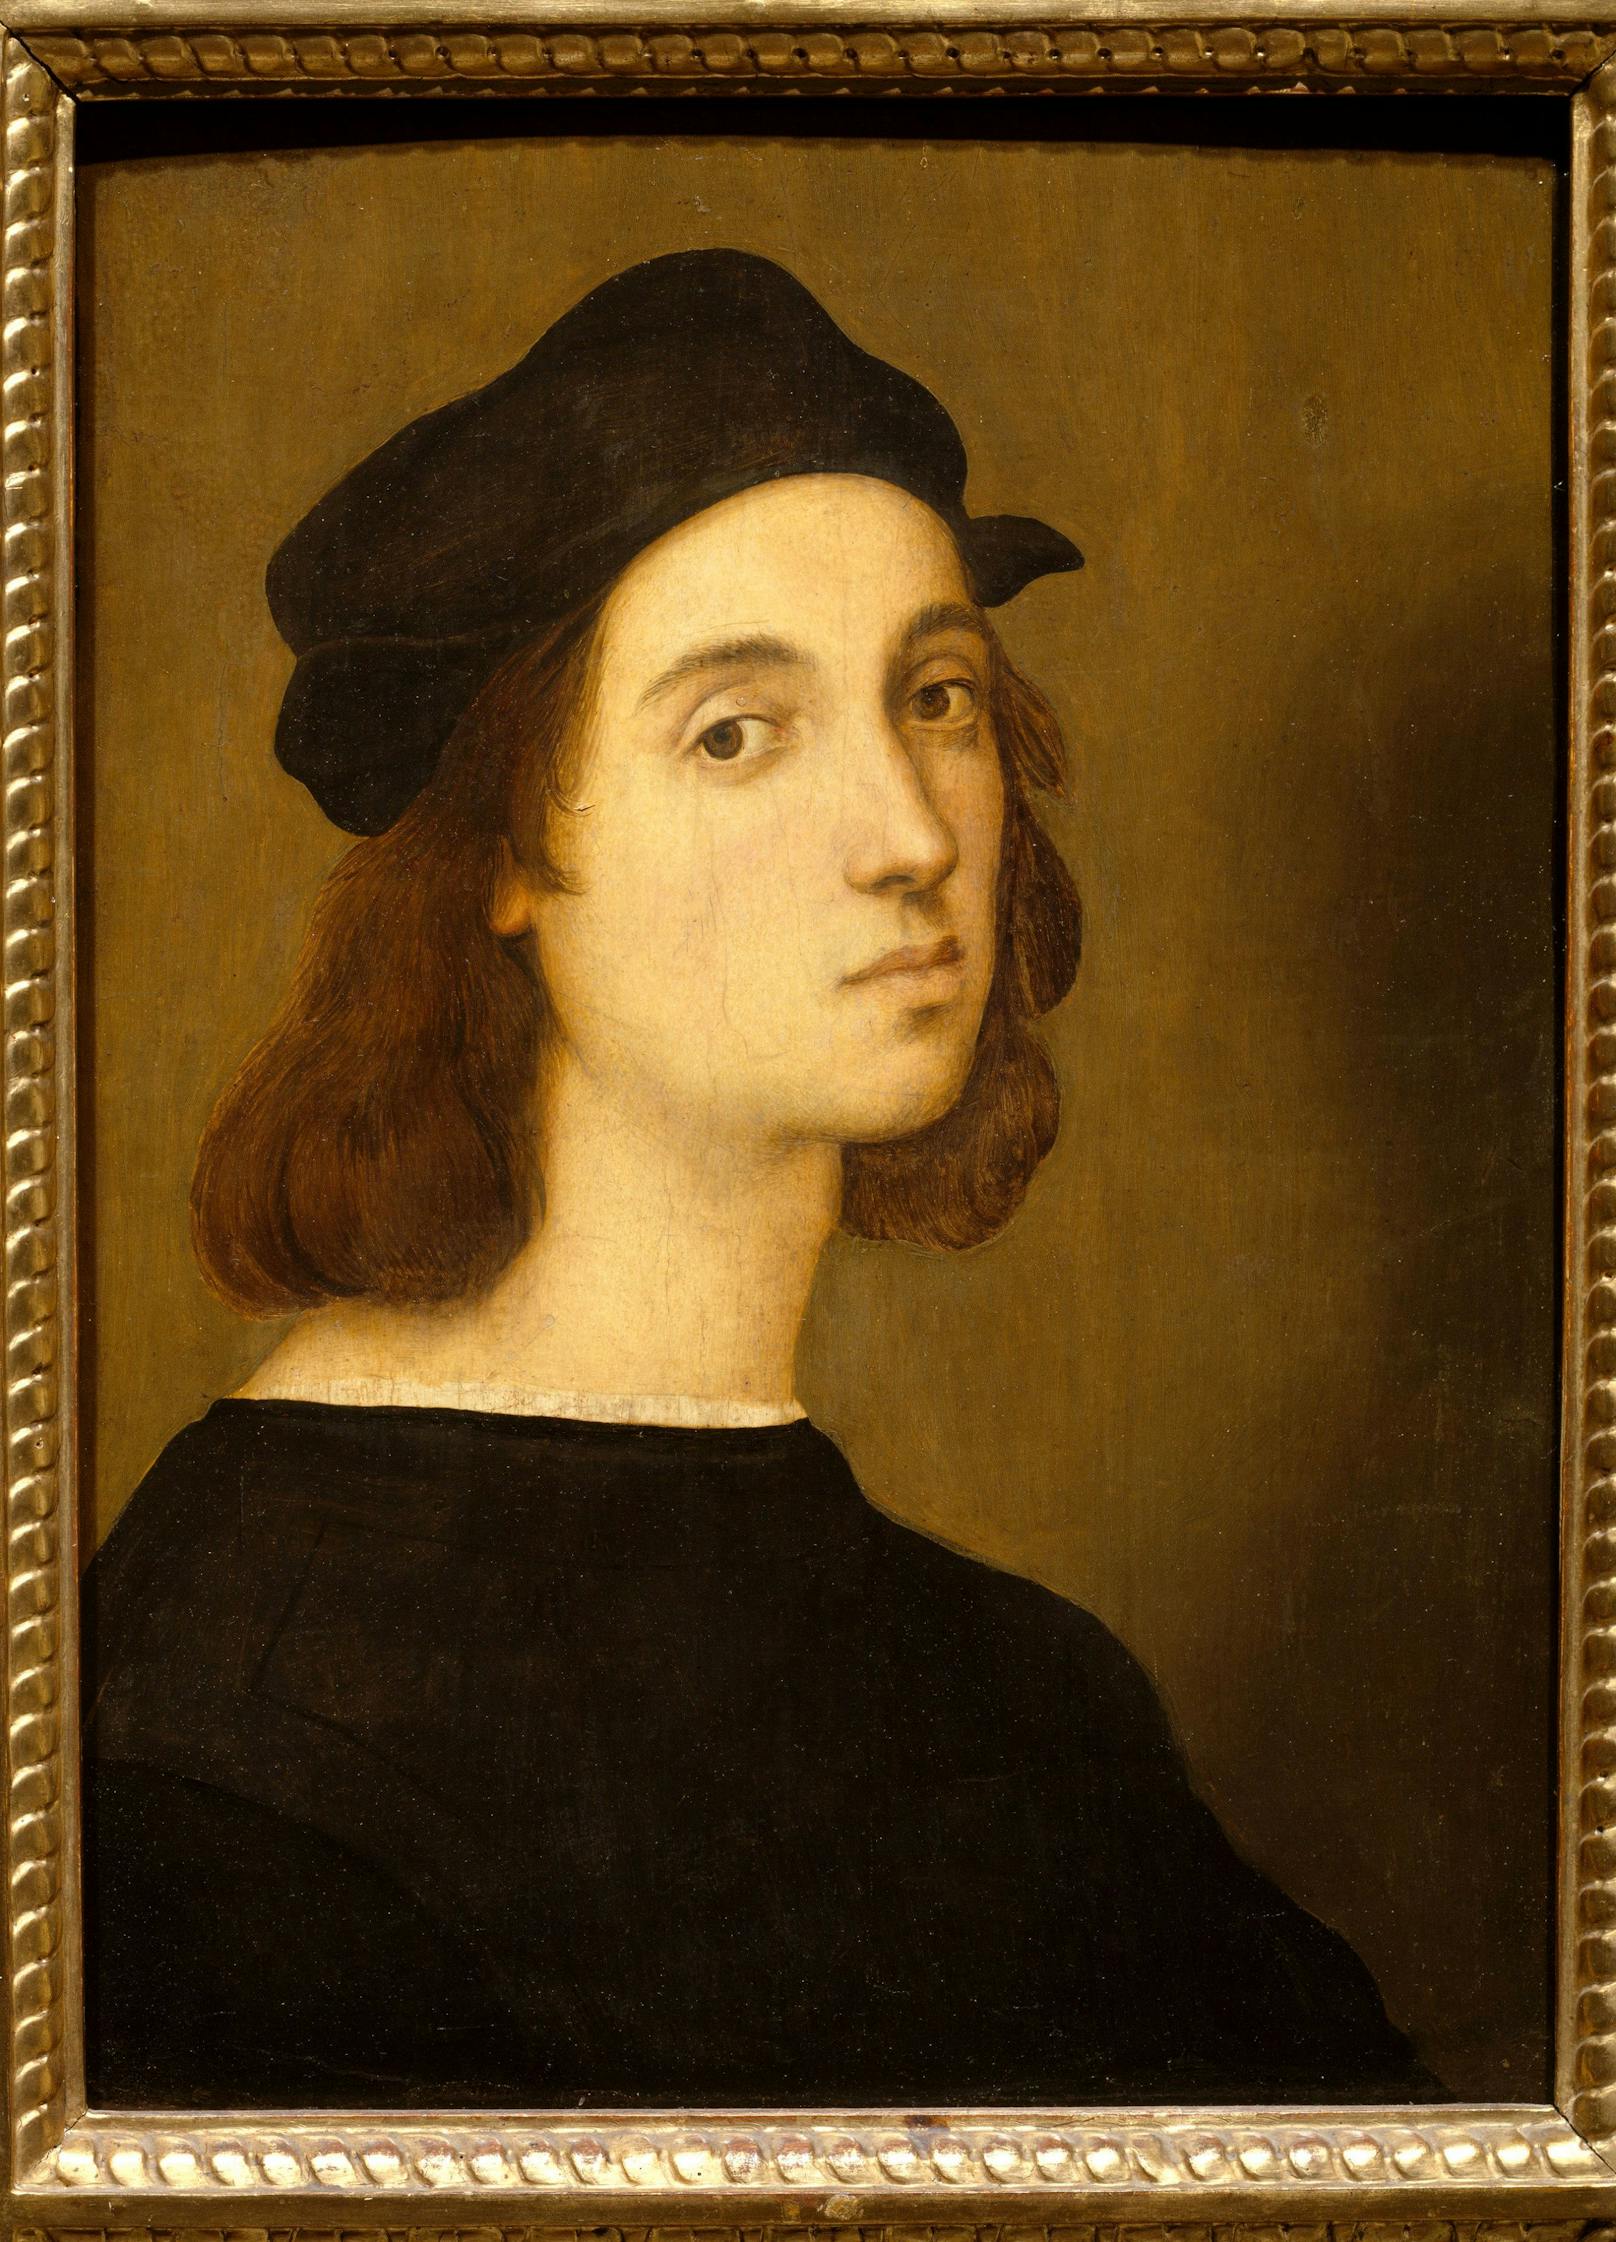 Raffaello Sanzio da Urbino, kurz Raffael, war ein italienischer Maler und Architekt. Er gilt als einer der bedeutendsten Künstler der italienischen Hochrenaissance (Selbstbildnis)